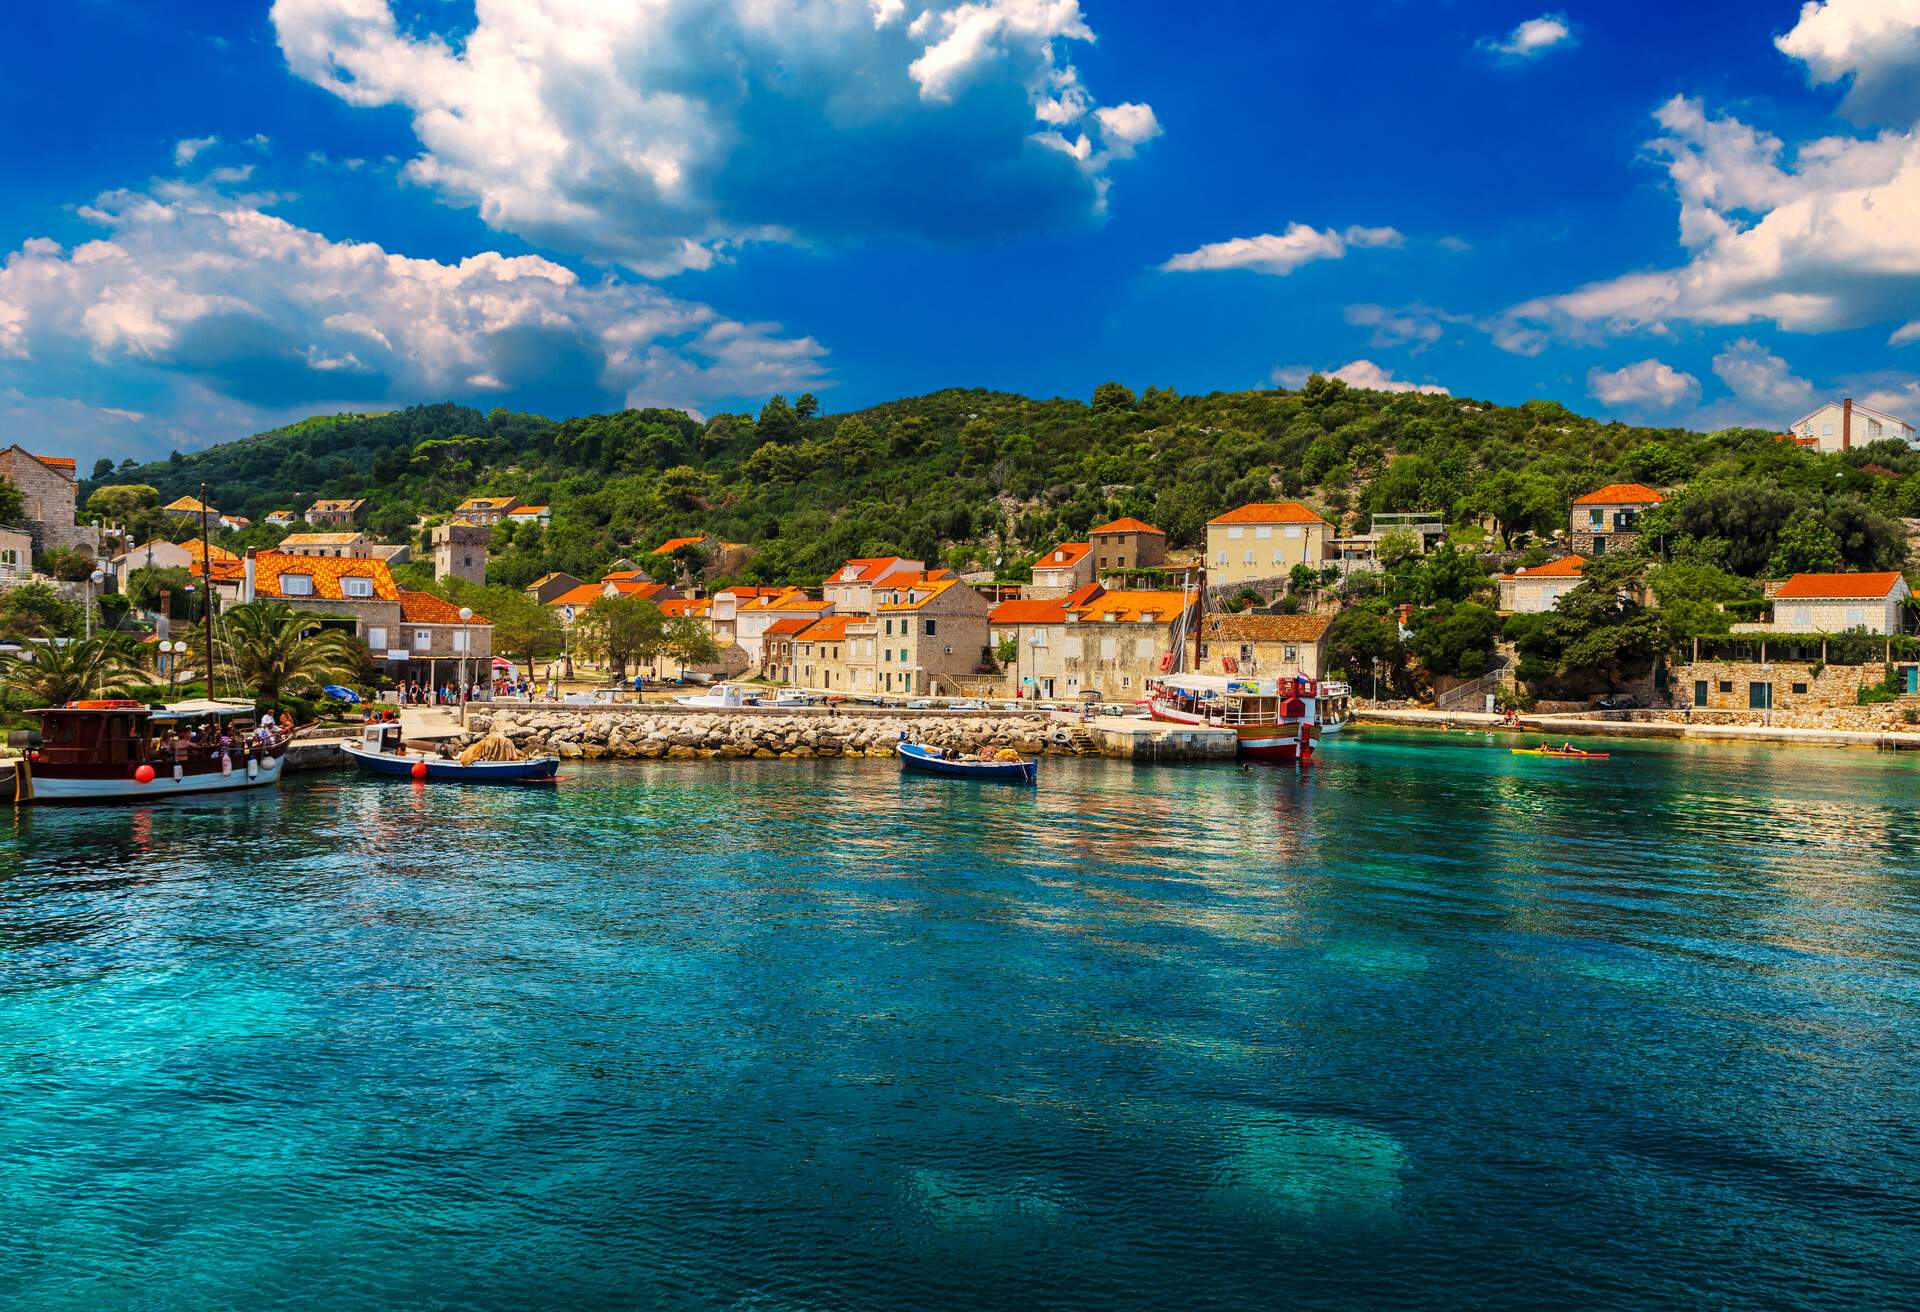 Croatia. South Dalmatia - Elaphiti Island. The island of Sipan (also Sipano, Giuppana) situated near Dubrovnik city. Sudurad (San Giorgio) settlement